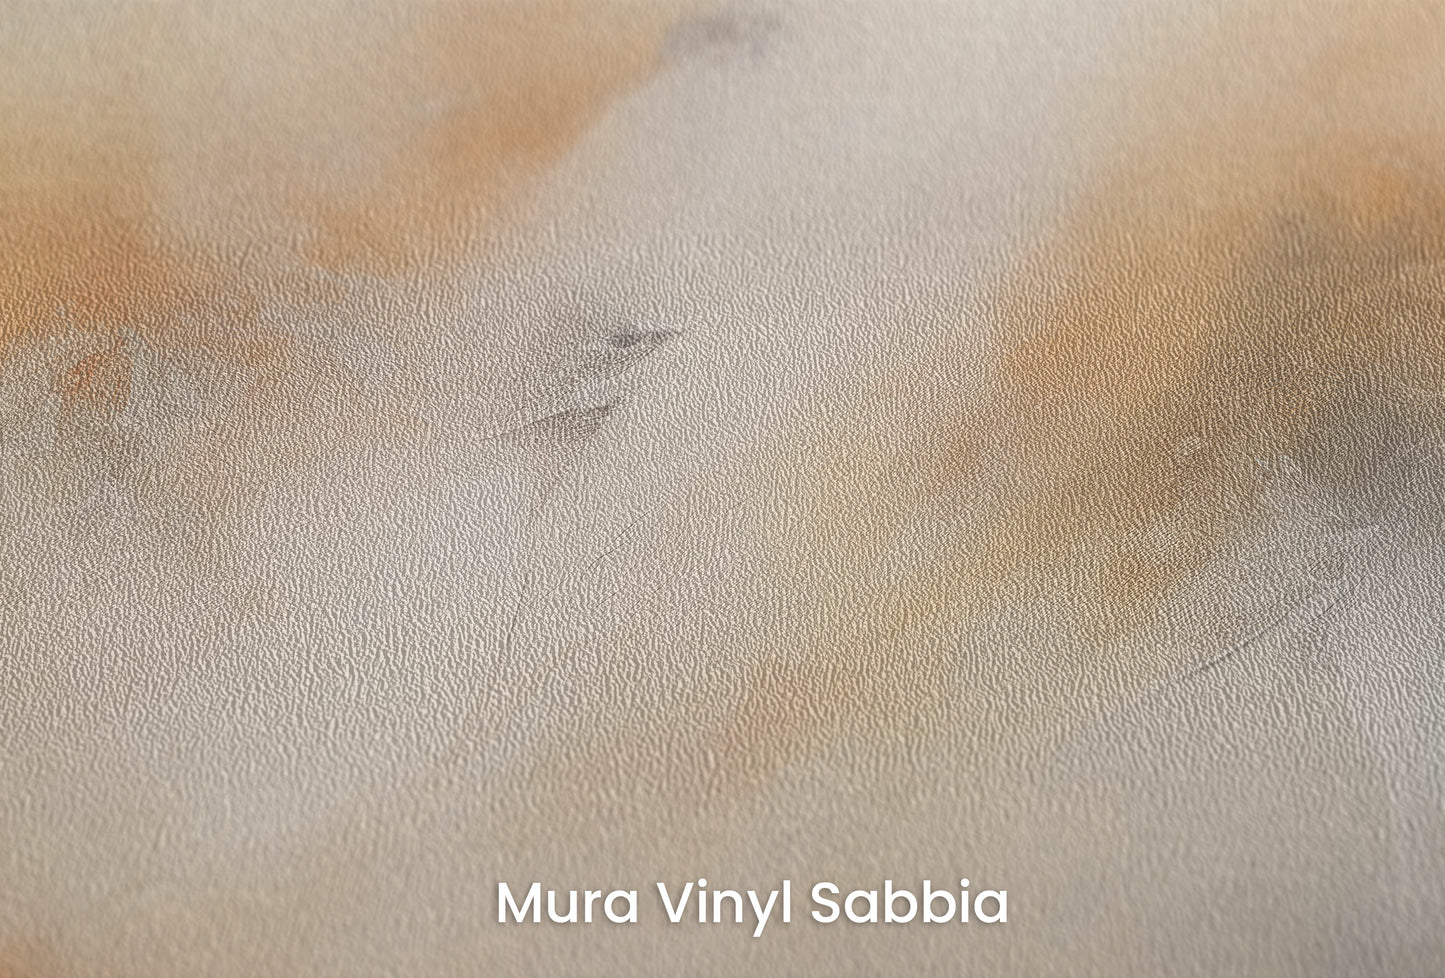 Zbliżenie na artystyczną fototapetę o nazwie GOLDEN PEAKS ABSTRACT LANDSCAPE na podłożu Mura Vinyl Sabbia struktura grubego ziarna piasku.